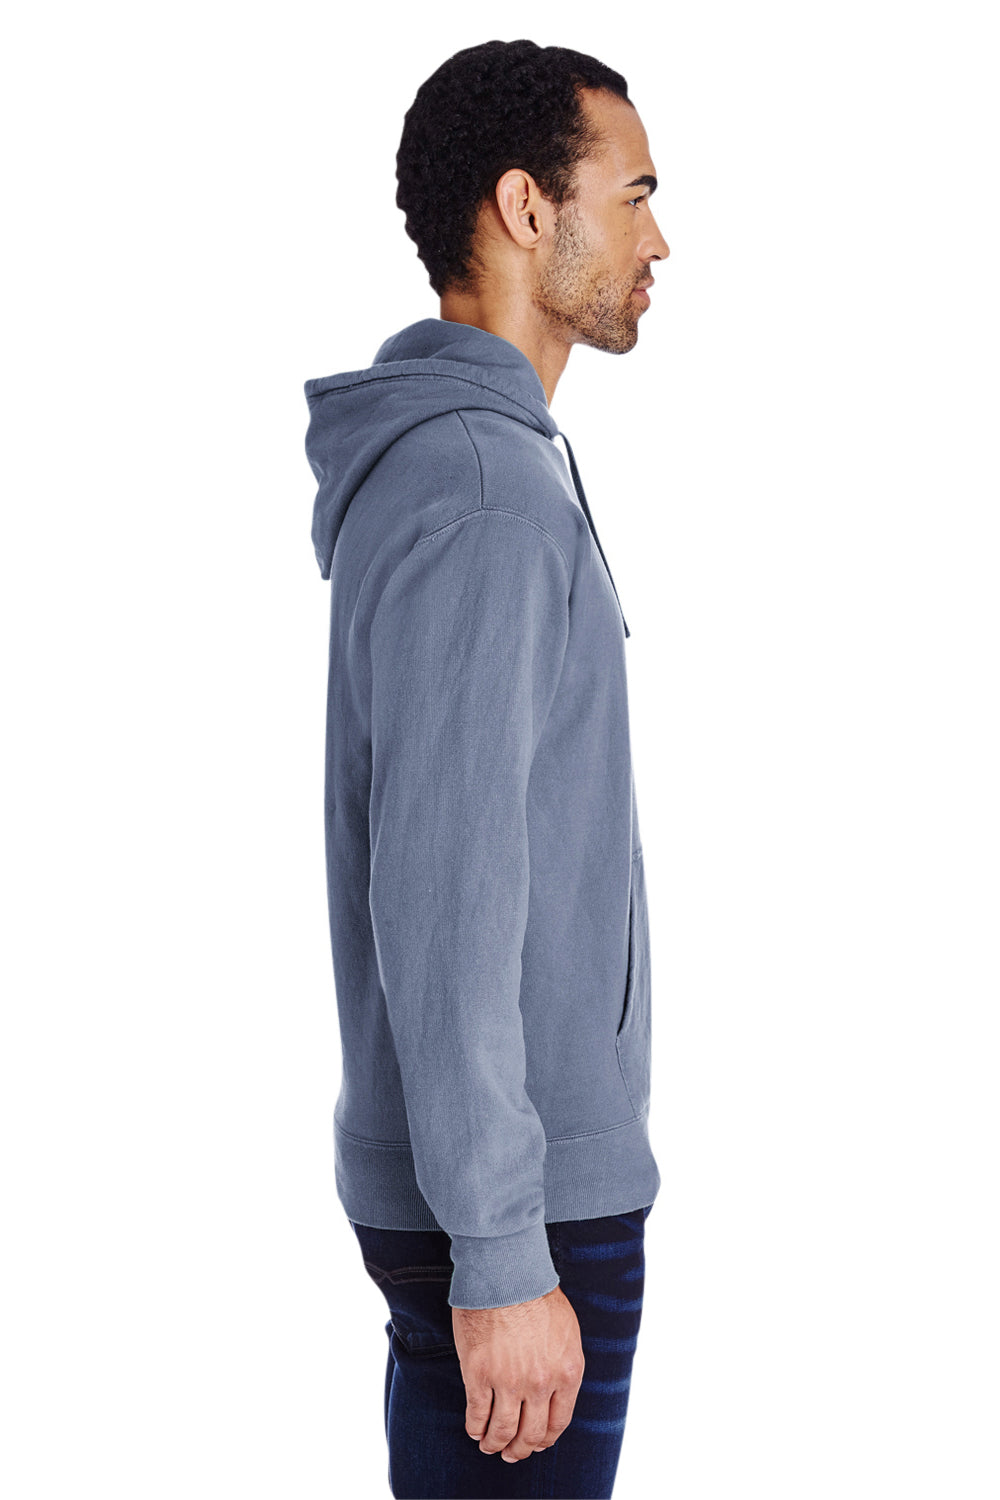 ComfortWash by Hanes GDH450 Hooded Sweatshirt Hoodie Saltwater Blue Side